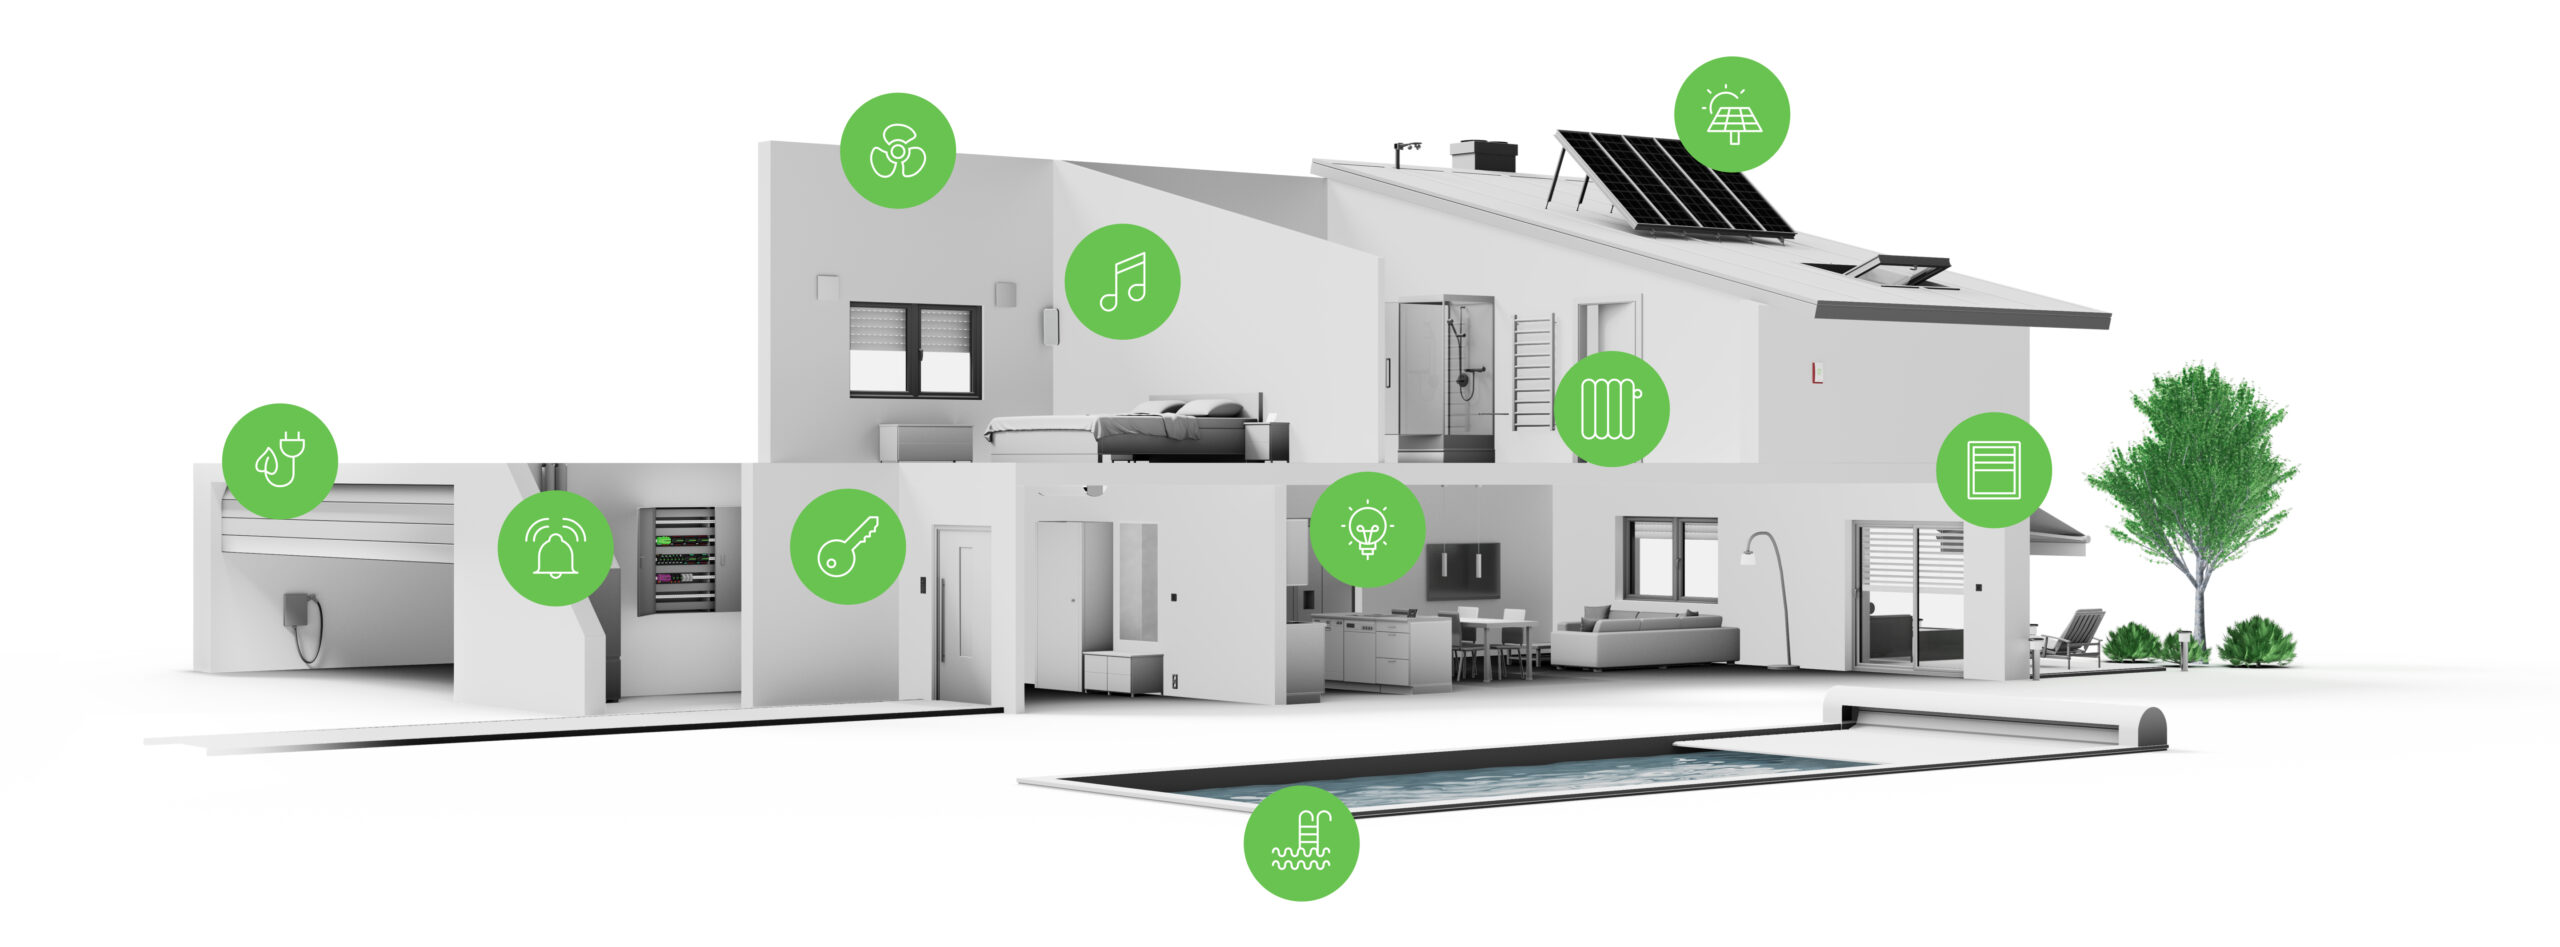 Inteligentny dom: Klucz do zwiększenia efektywności energetycznej budynku